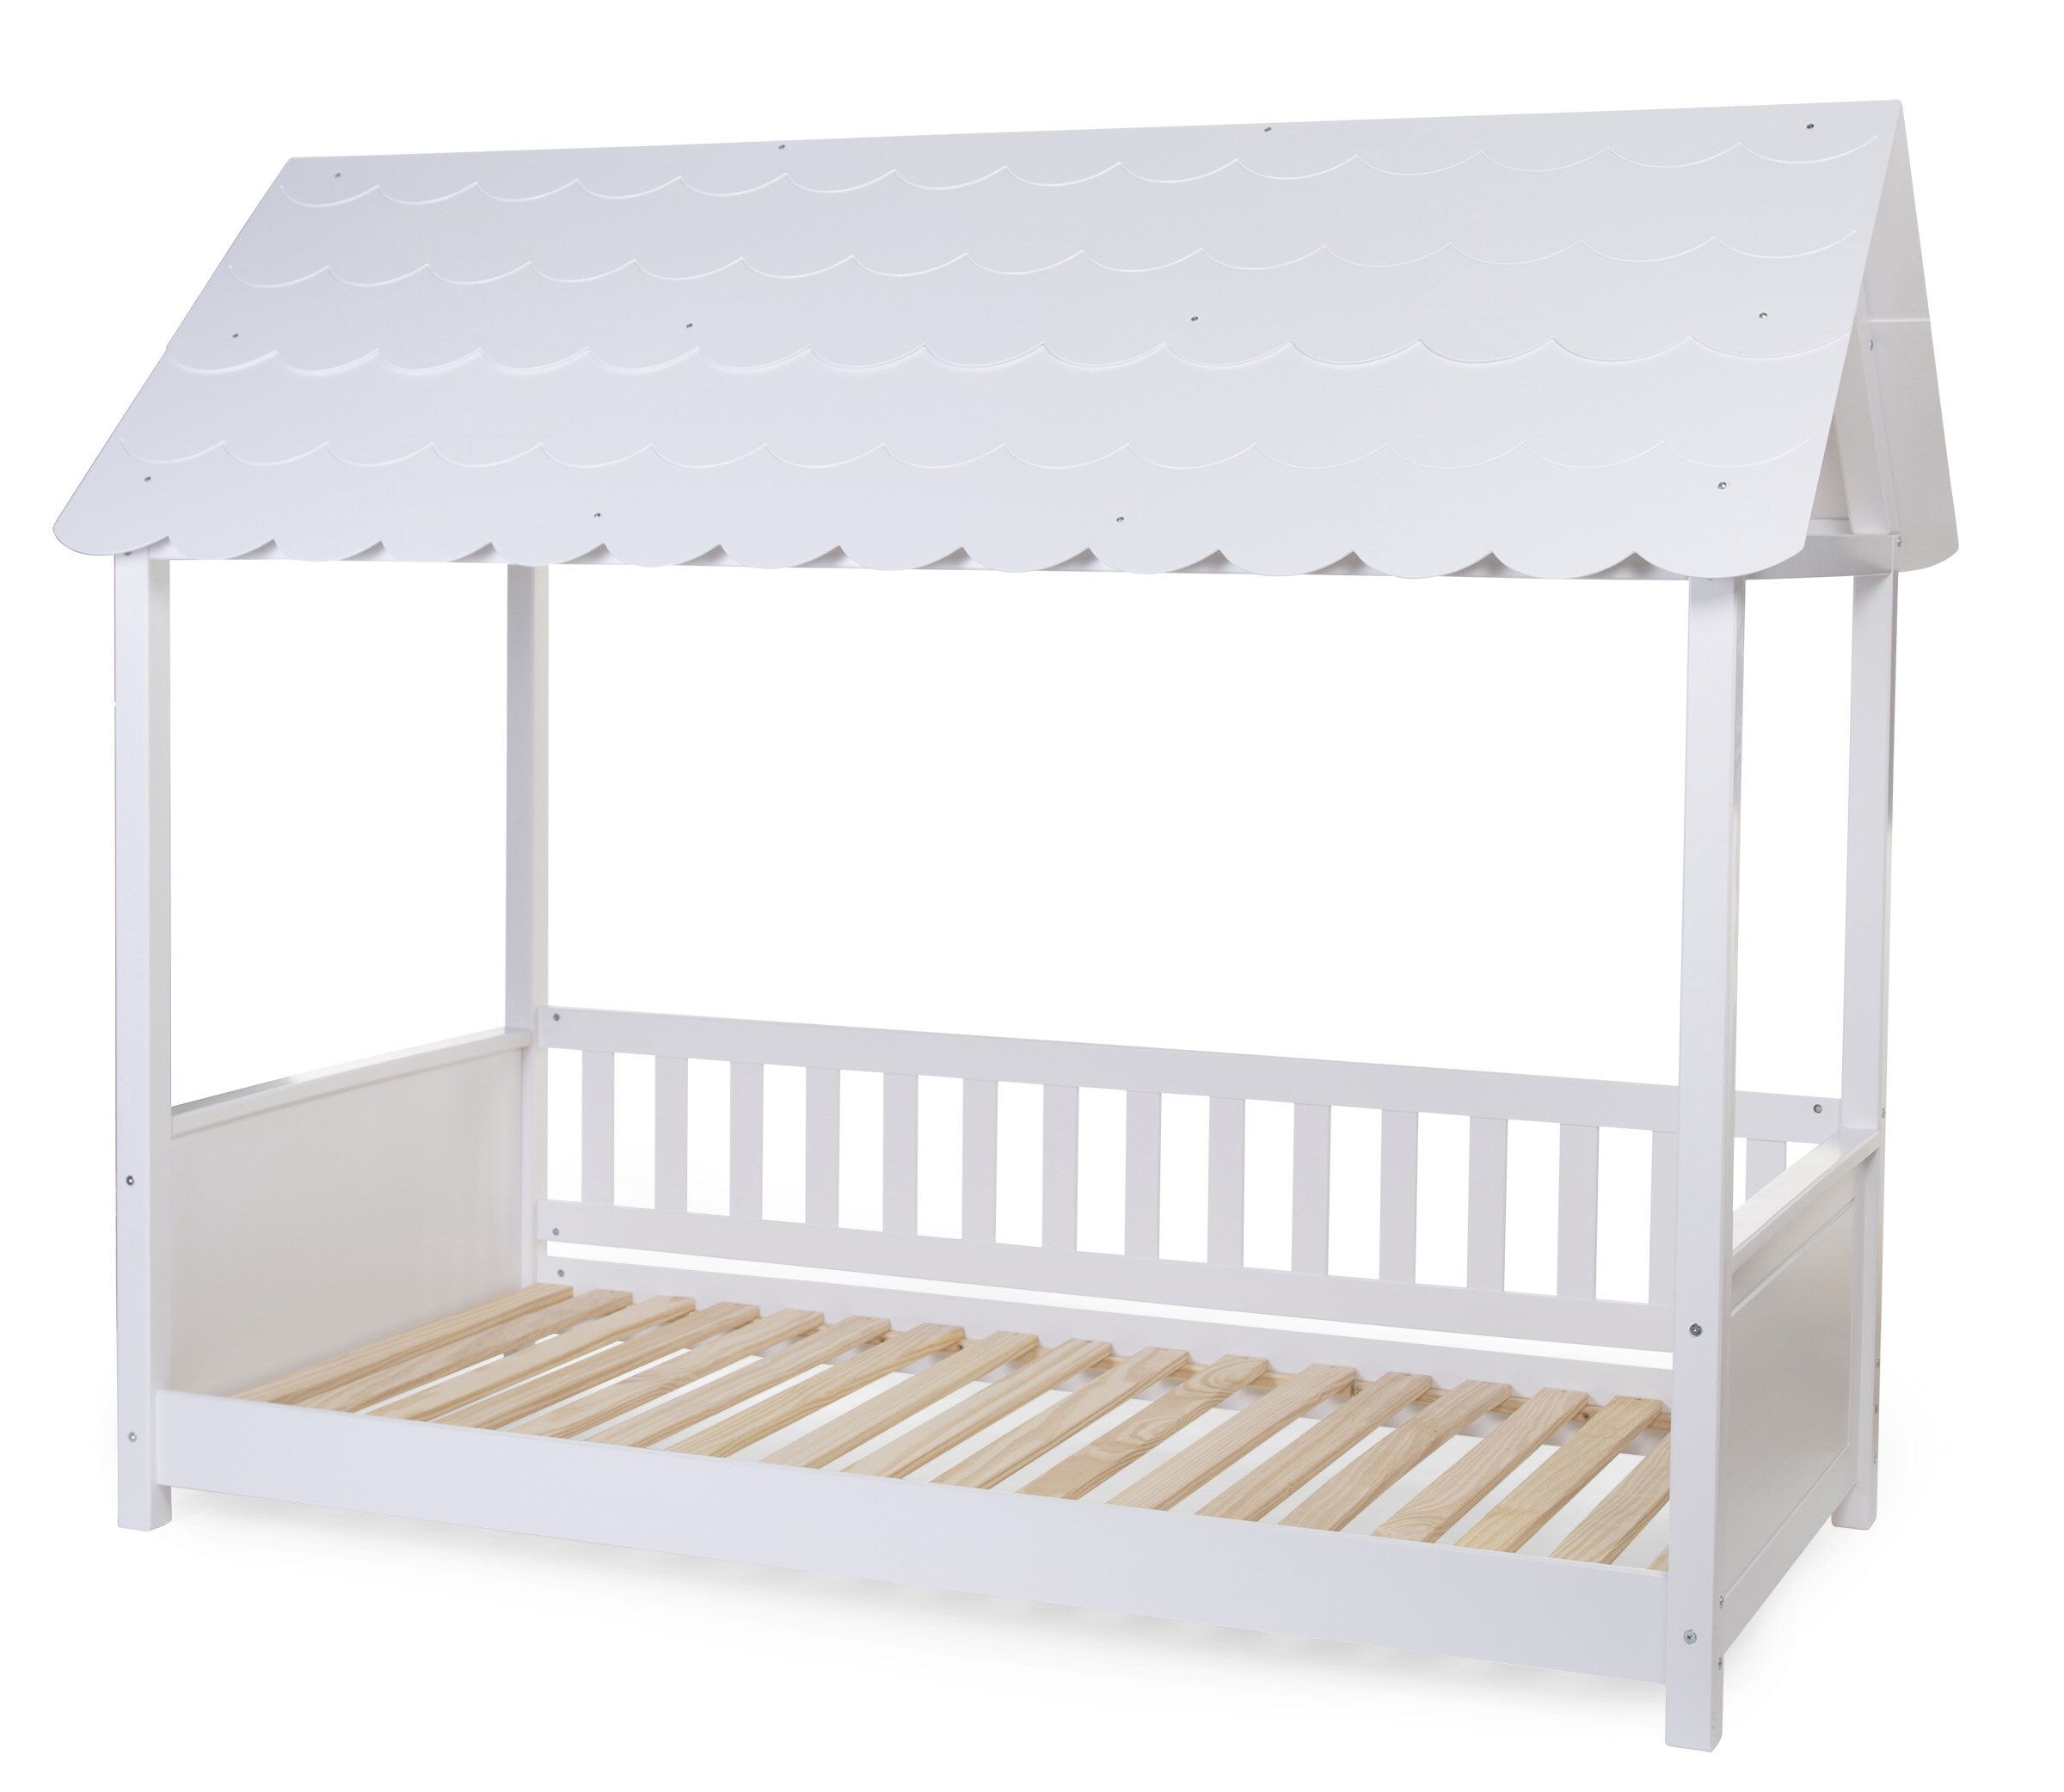 Детская кровать Дом с крышей 200x90 см Childhome Rooftop bed frame house White